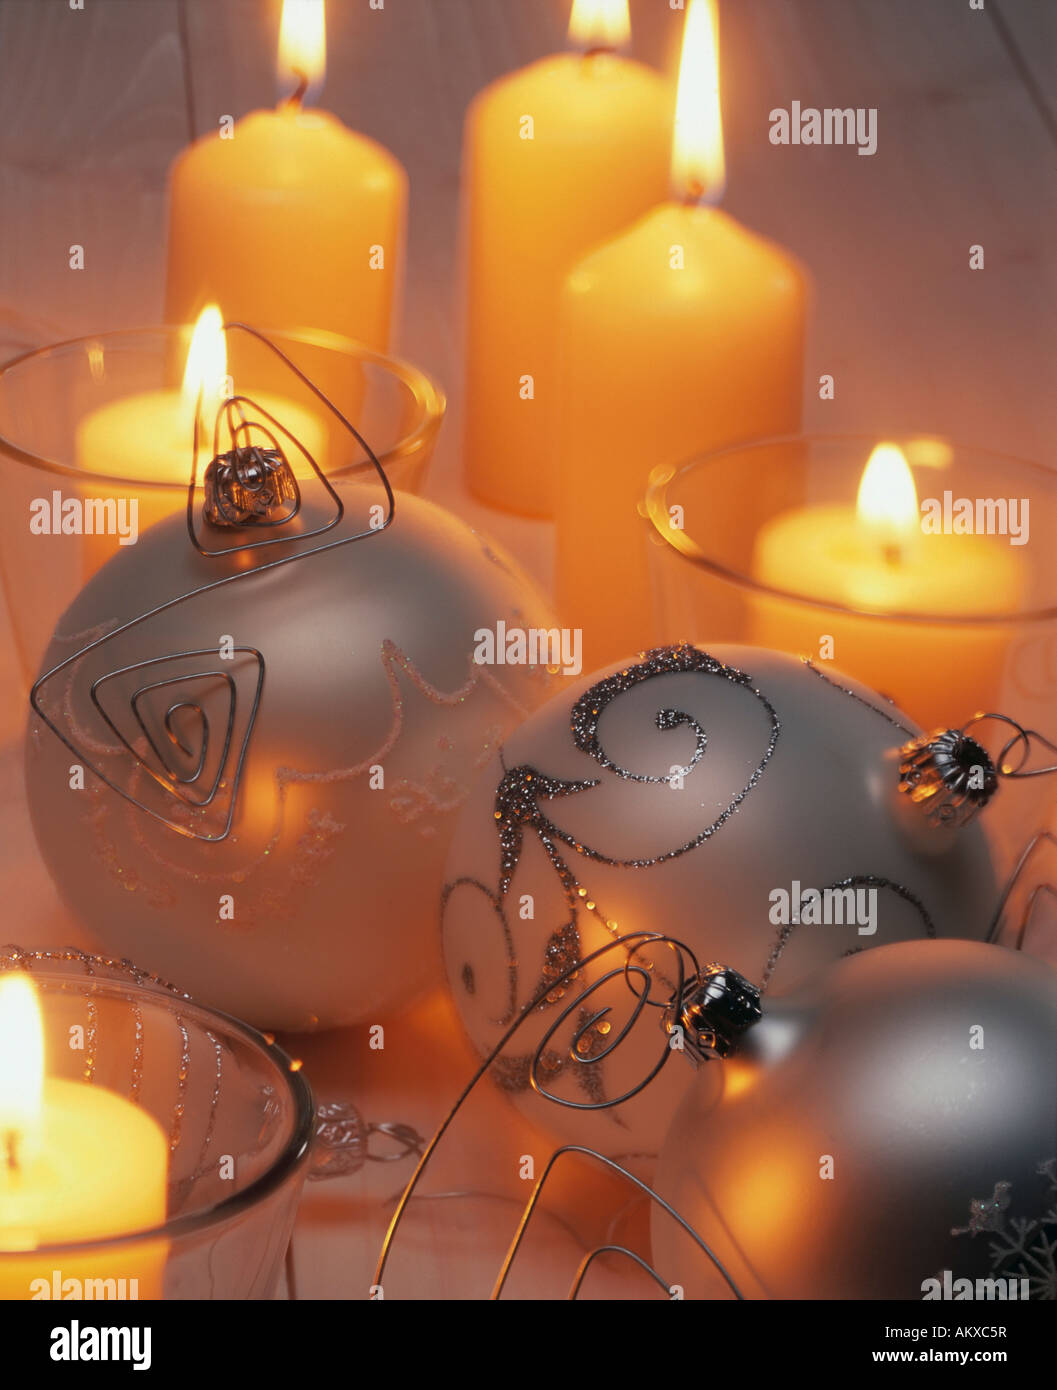 Albero di natale sfera ornamento e candele accese Foto Stock